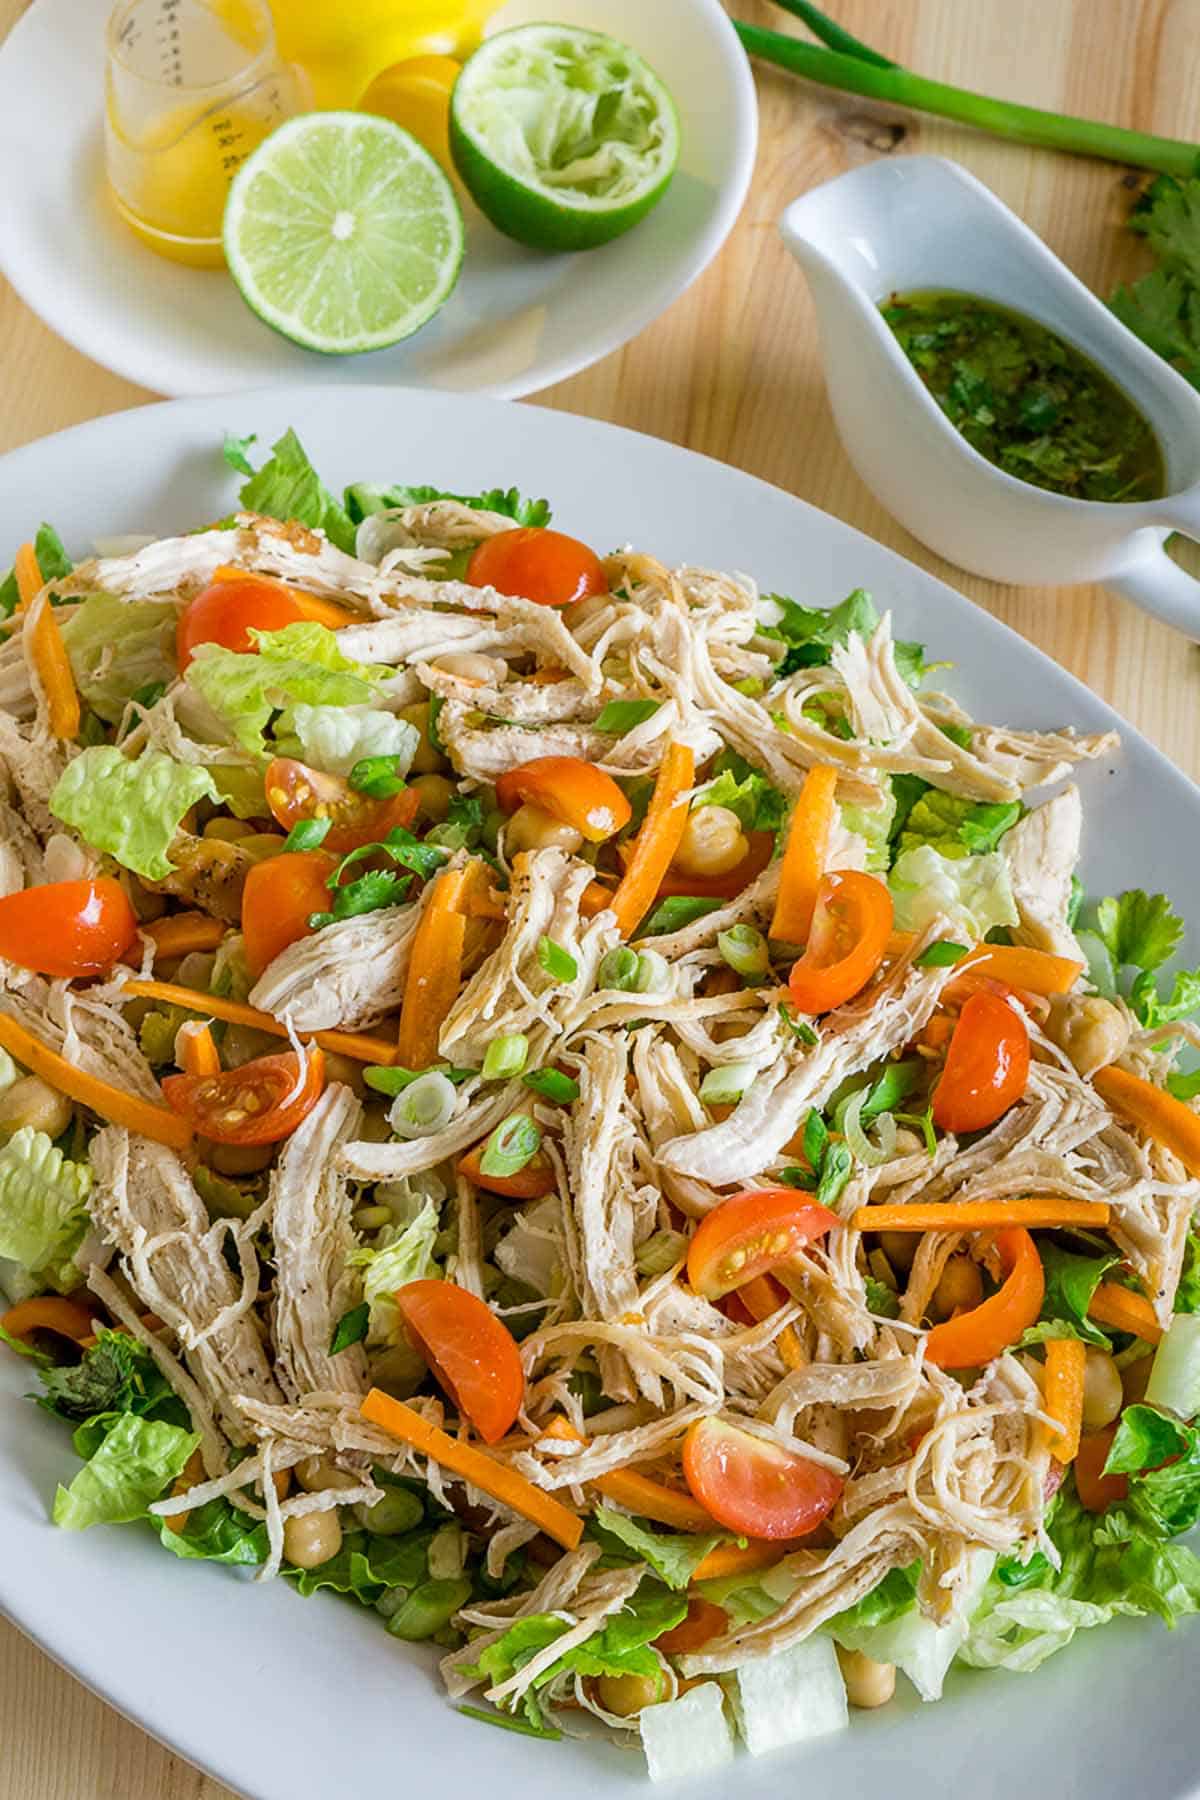 Image: Shredded Chicken Salad